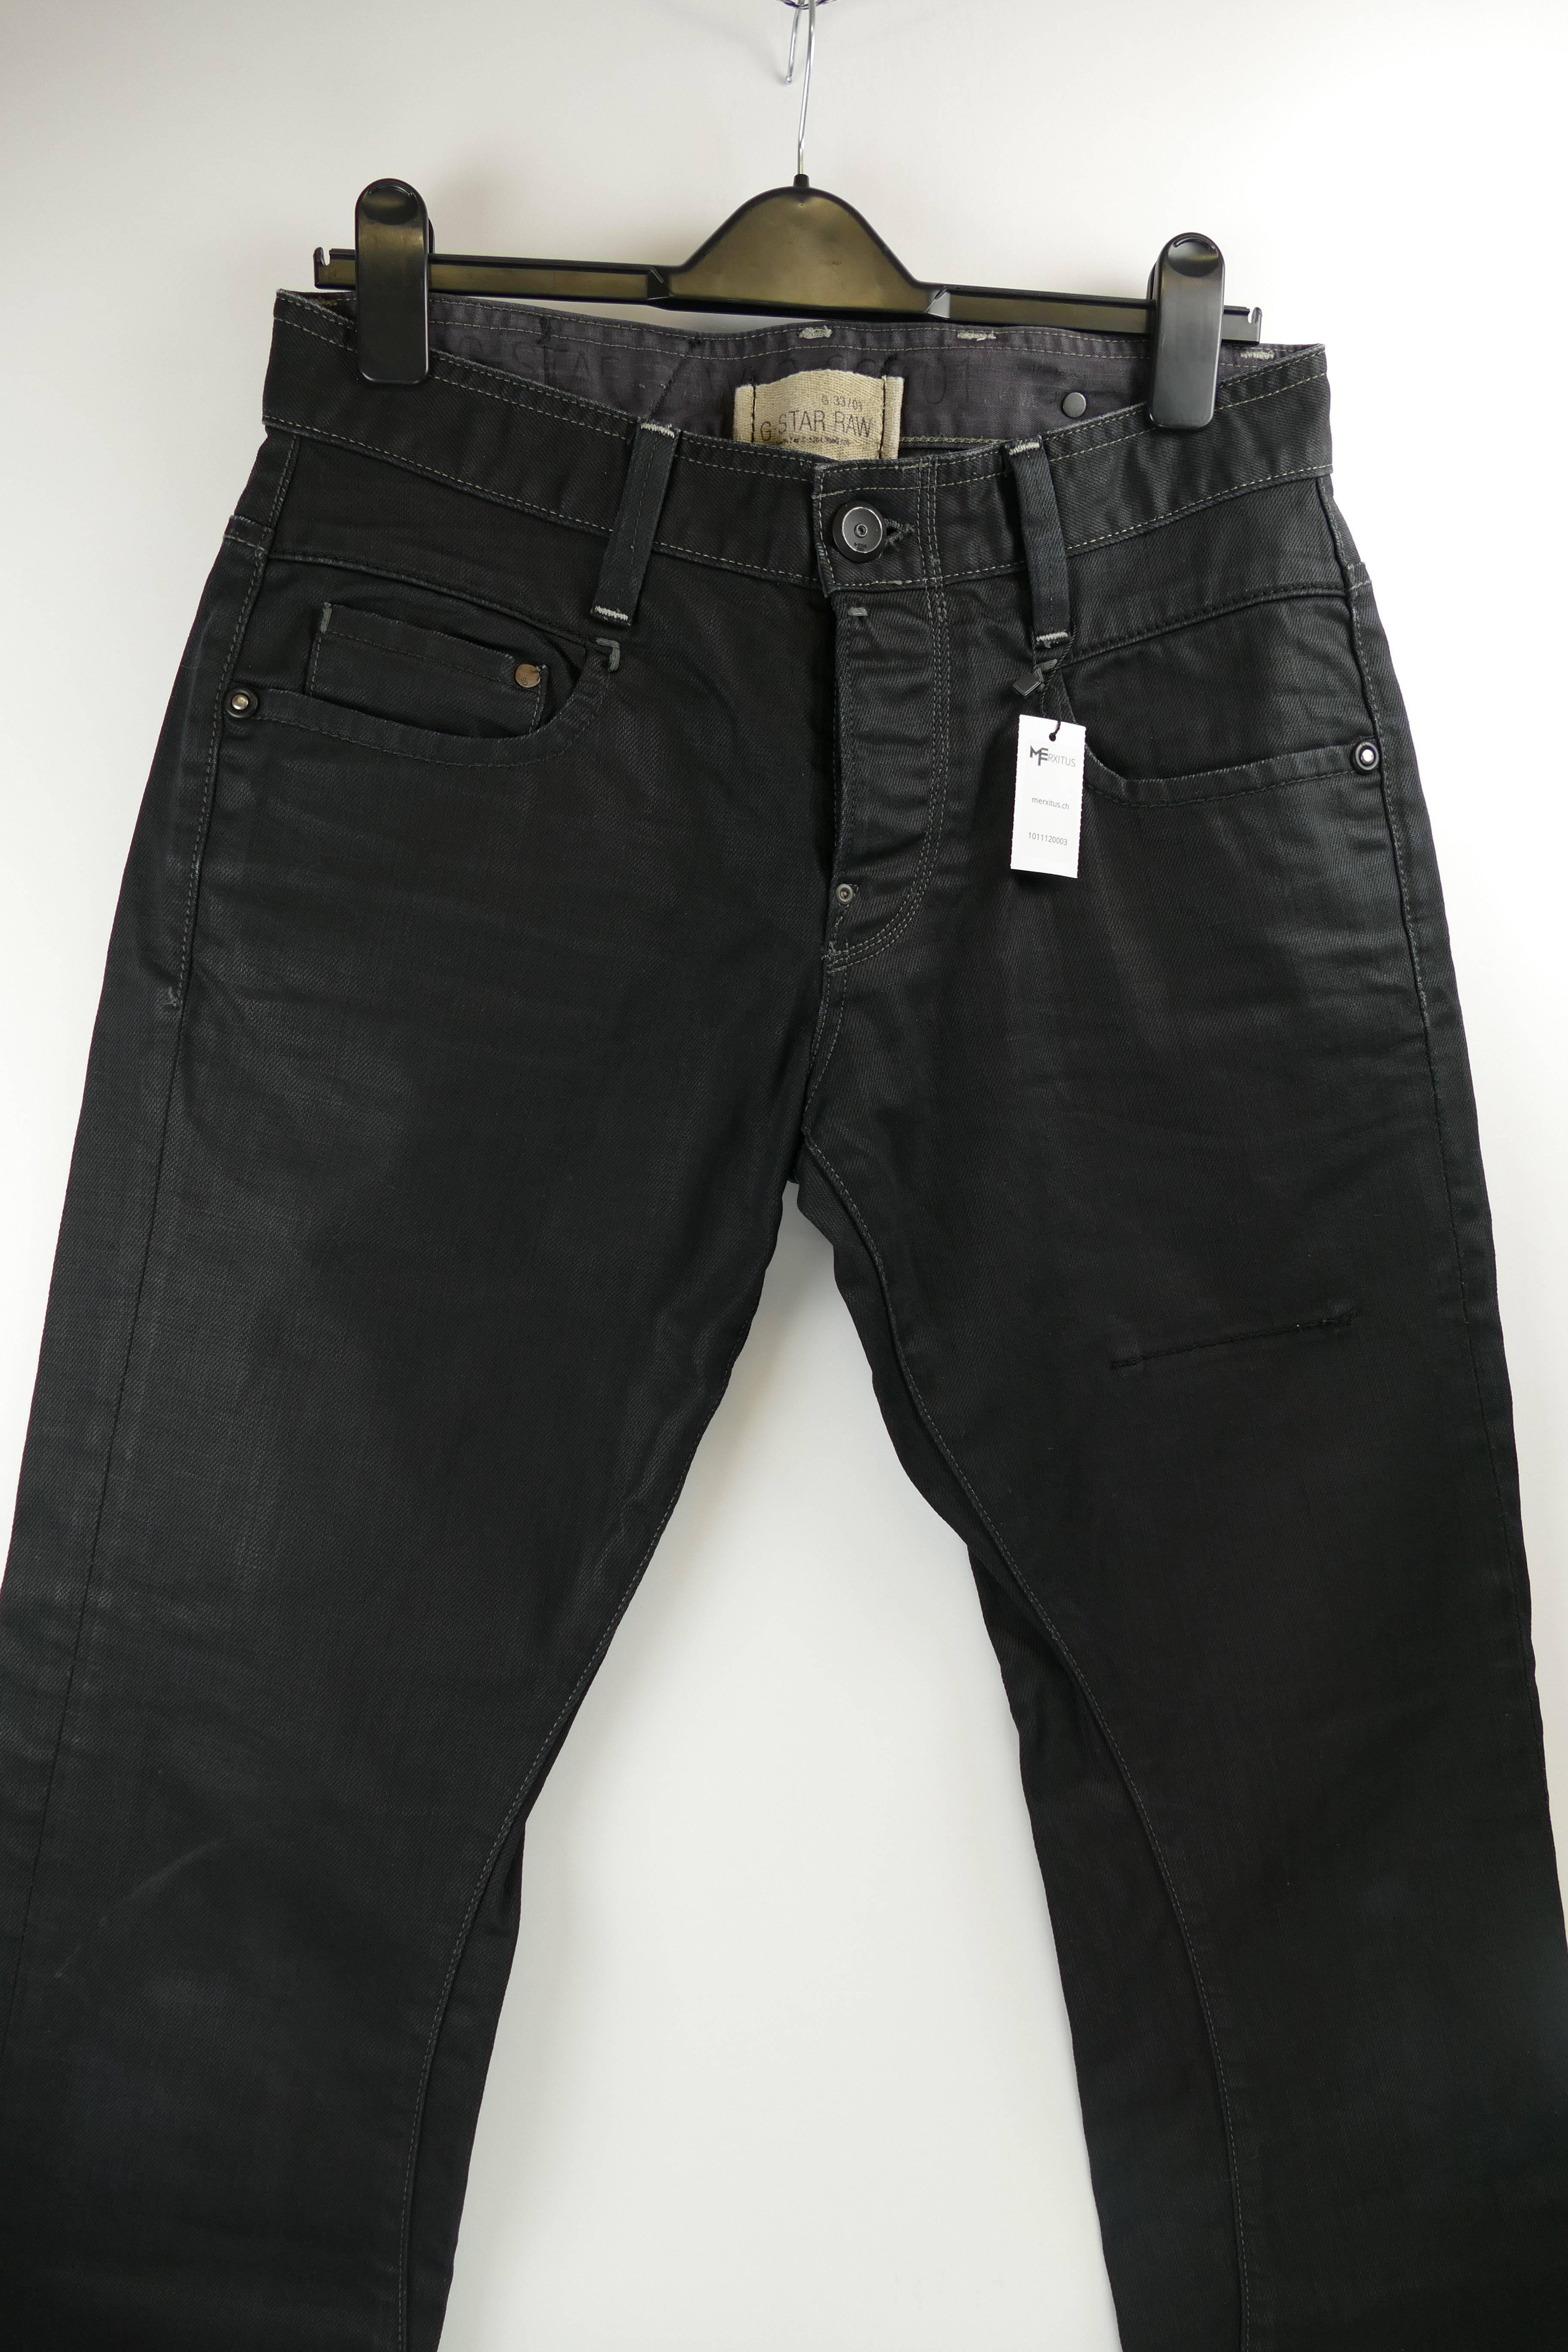 Schwarze Herren Jeans, Gr. 32/34, G-STAR RAW